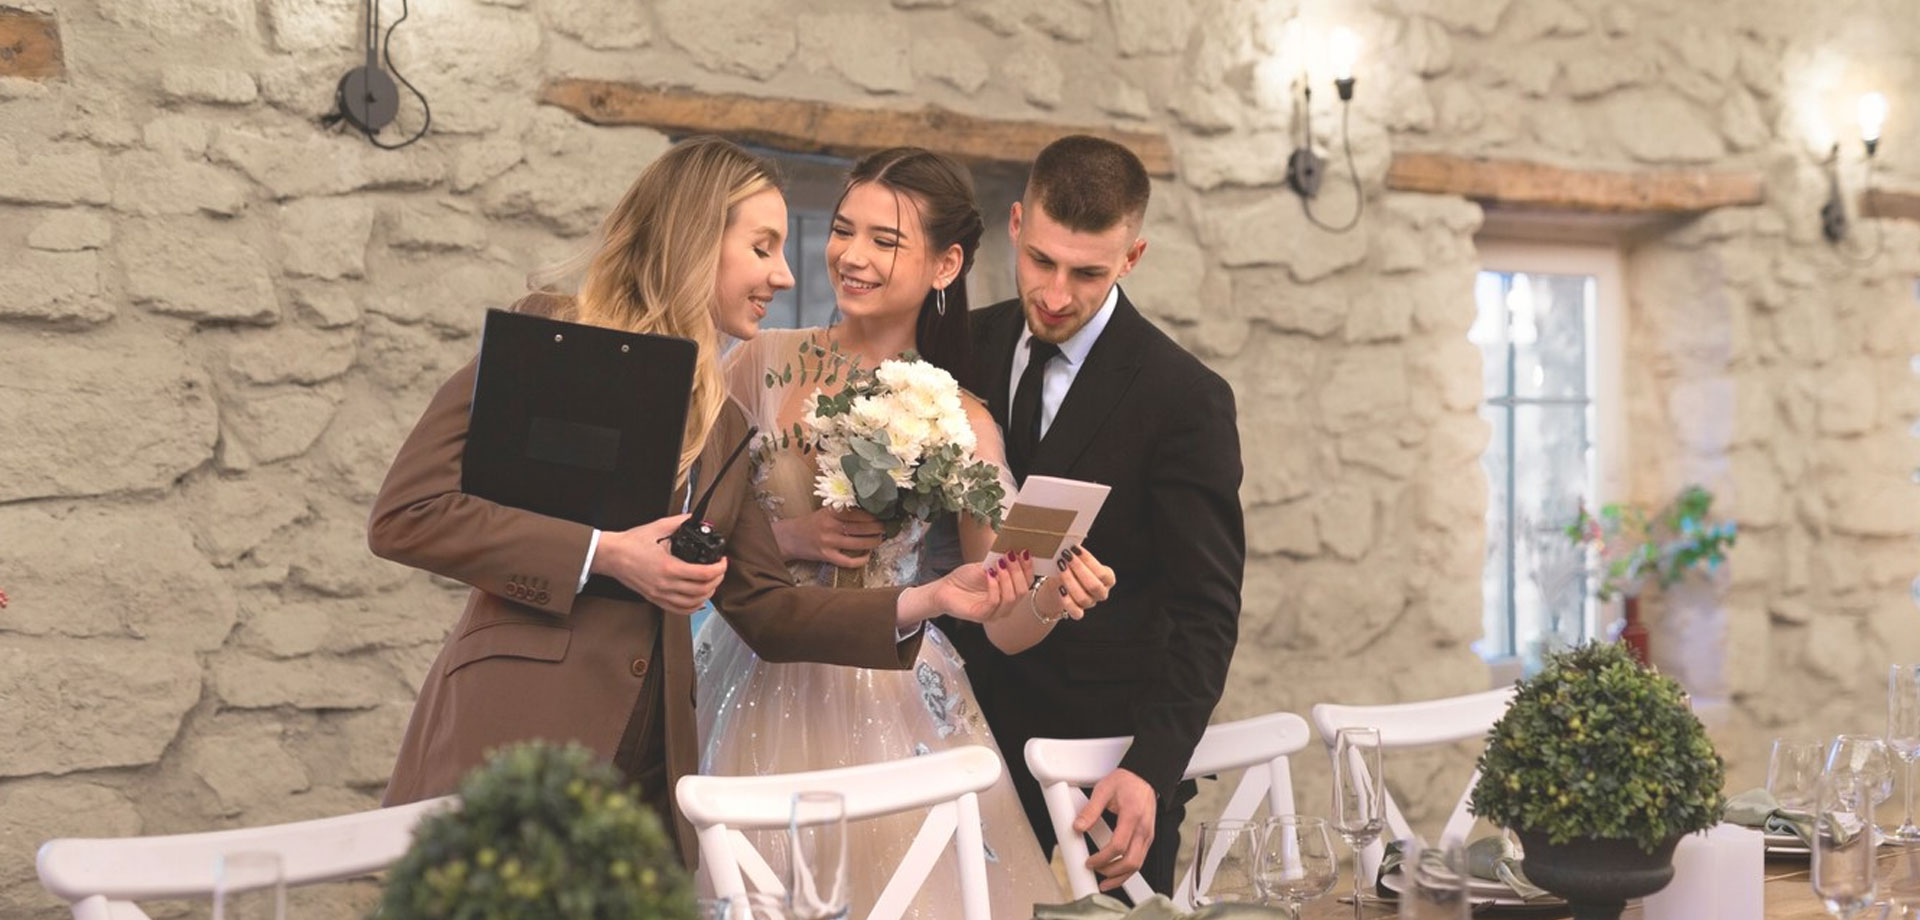 Beneficios de contratar un wedding planner